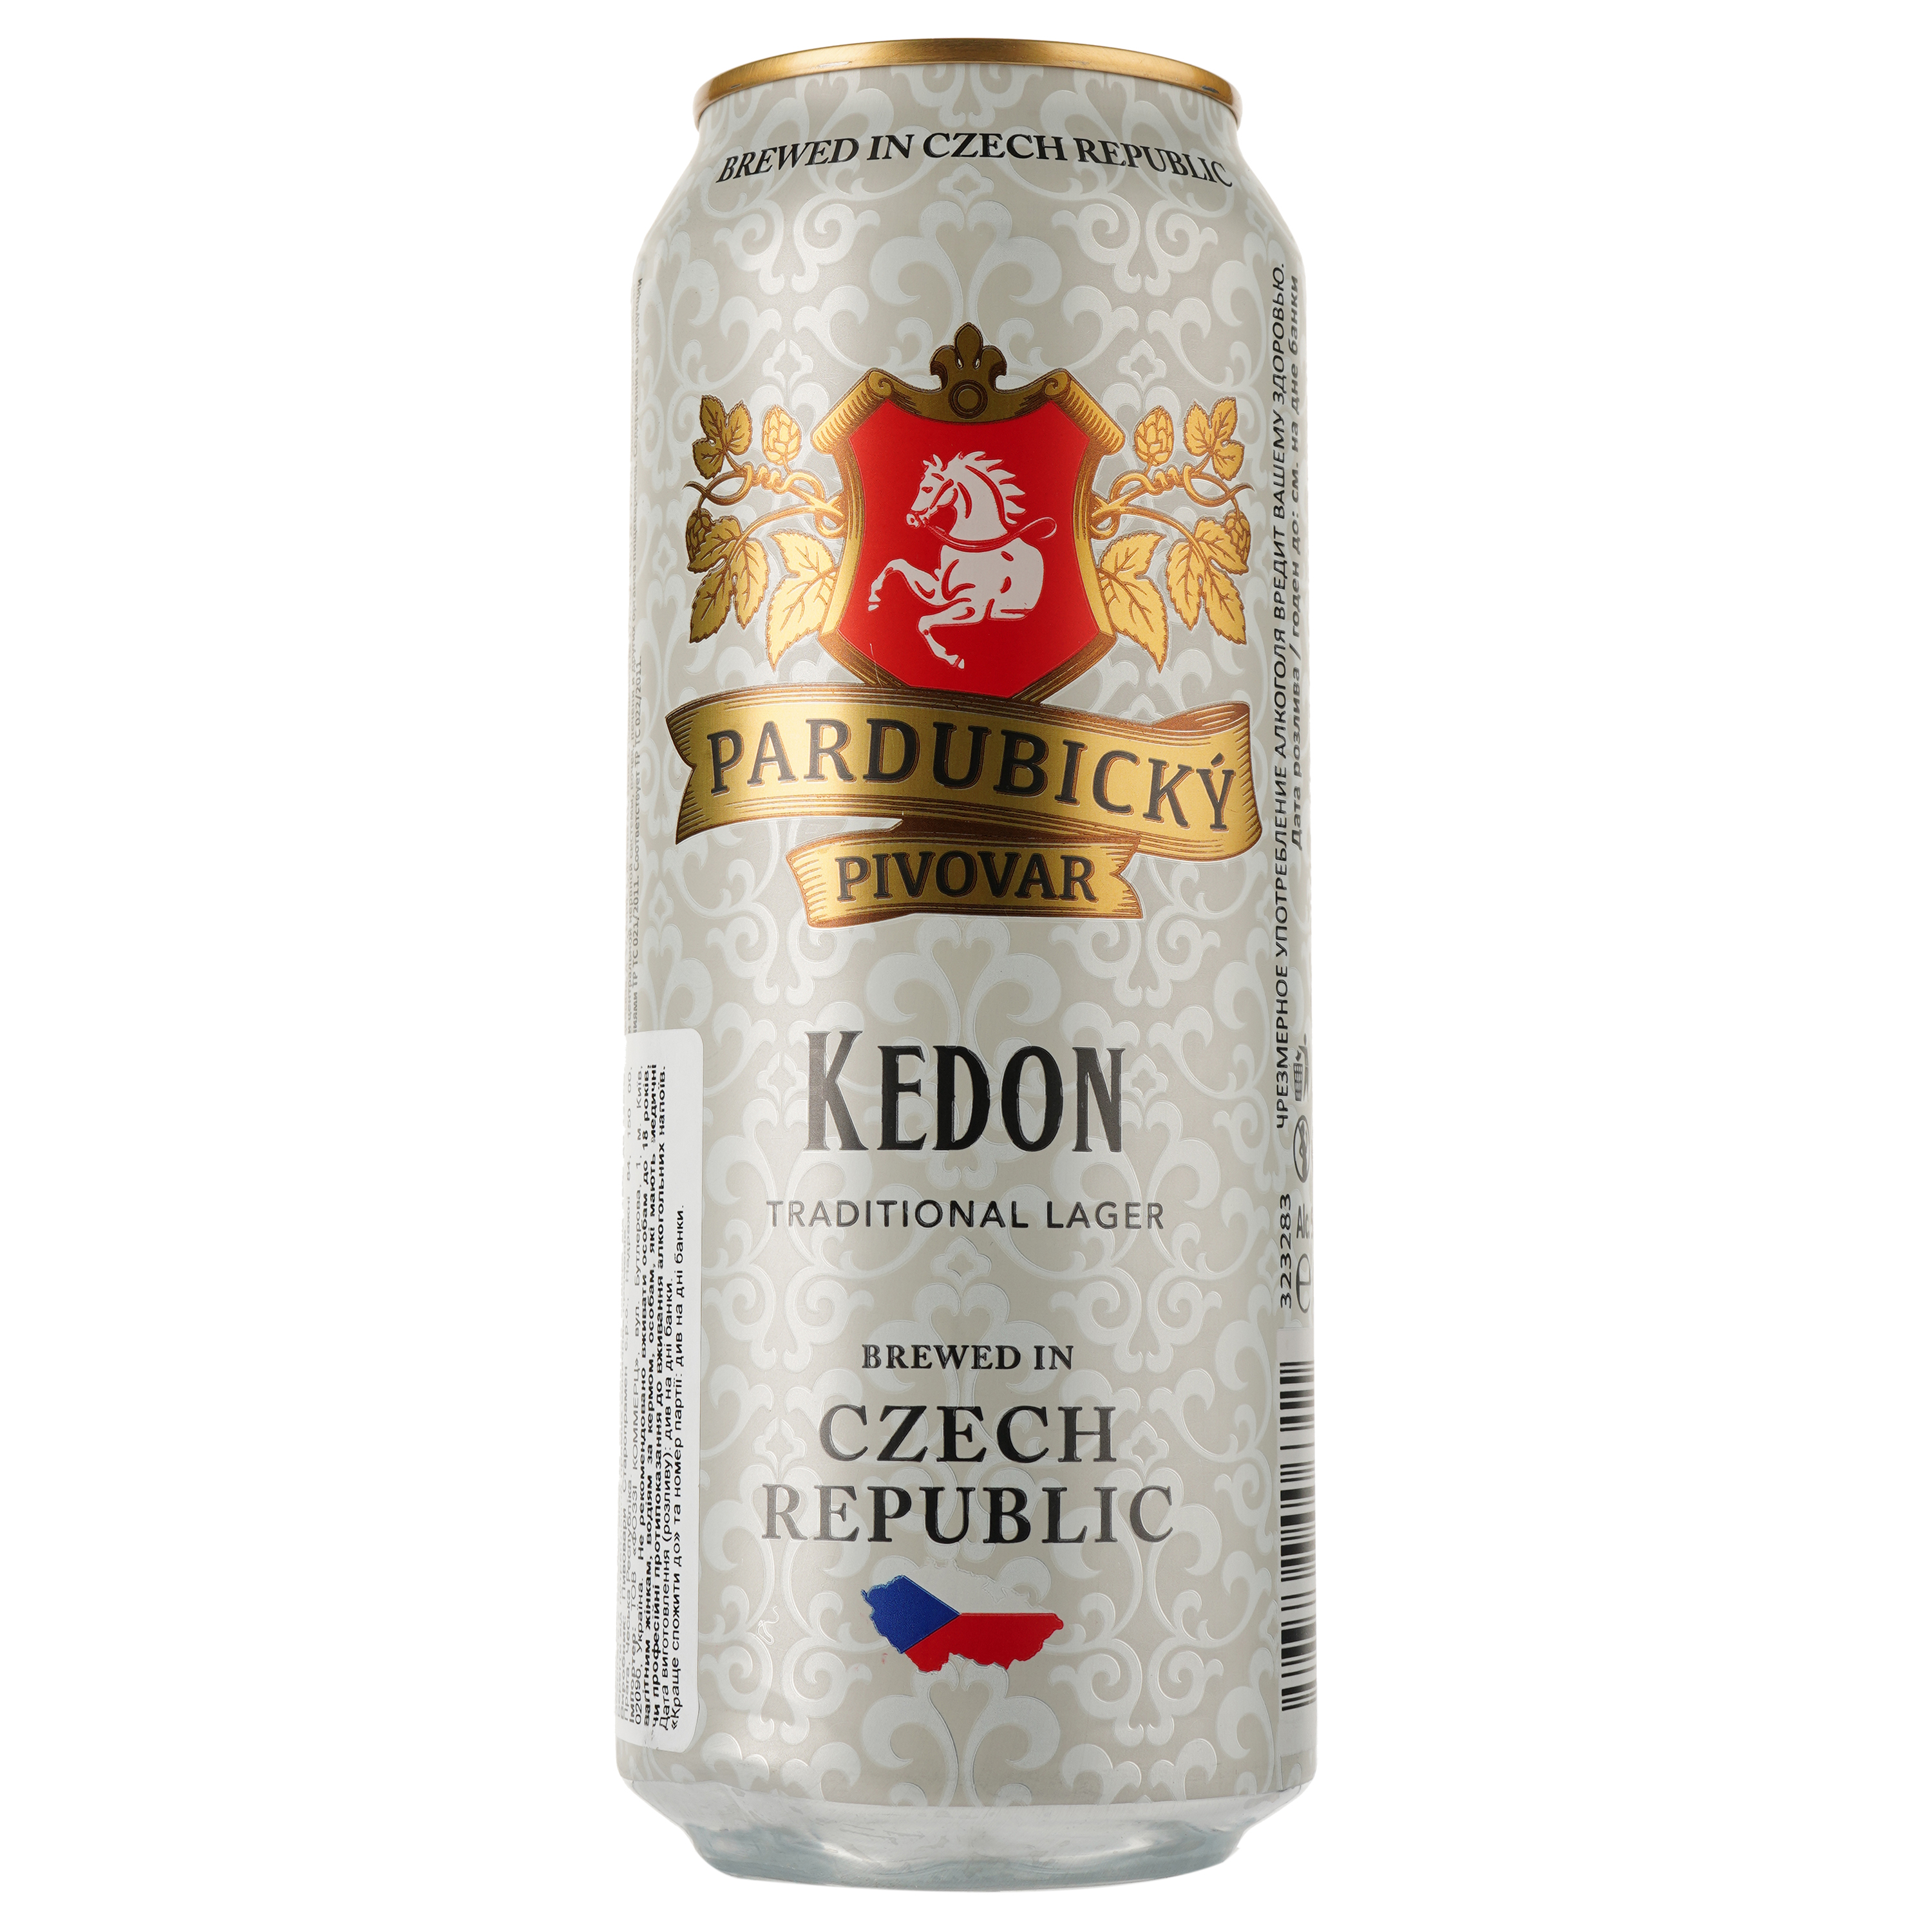 Пиво Pardubicky Pivovar Kedon, светлое, фильтрованное, 5%, ж/б, 0,5 л (913409) - фото 1